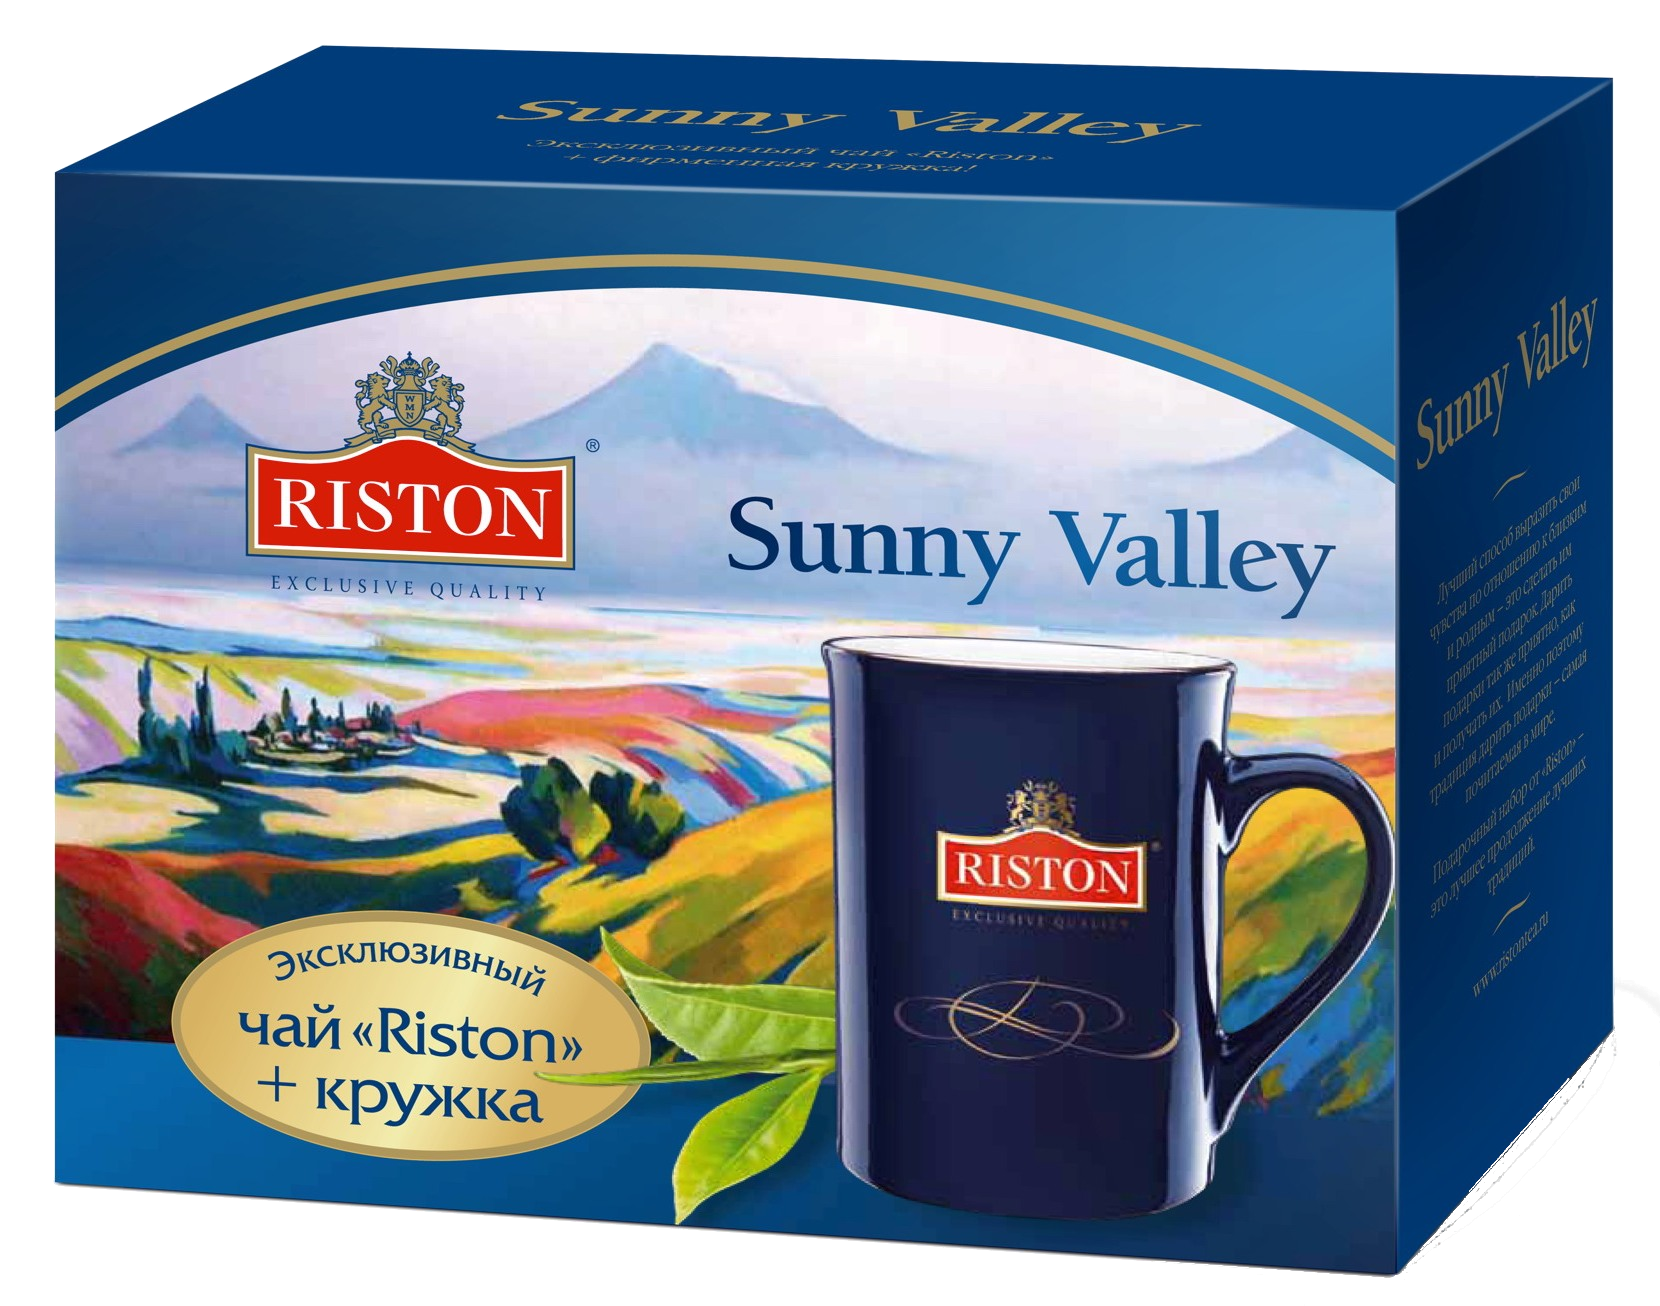 Чай Гринфилд Брекфаст. Чай черный Riston элитный цейлонский 25пак*2г. Чайный набор Ристон. Подарочный набор чая Riston. Купить качественный чай